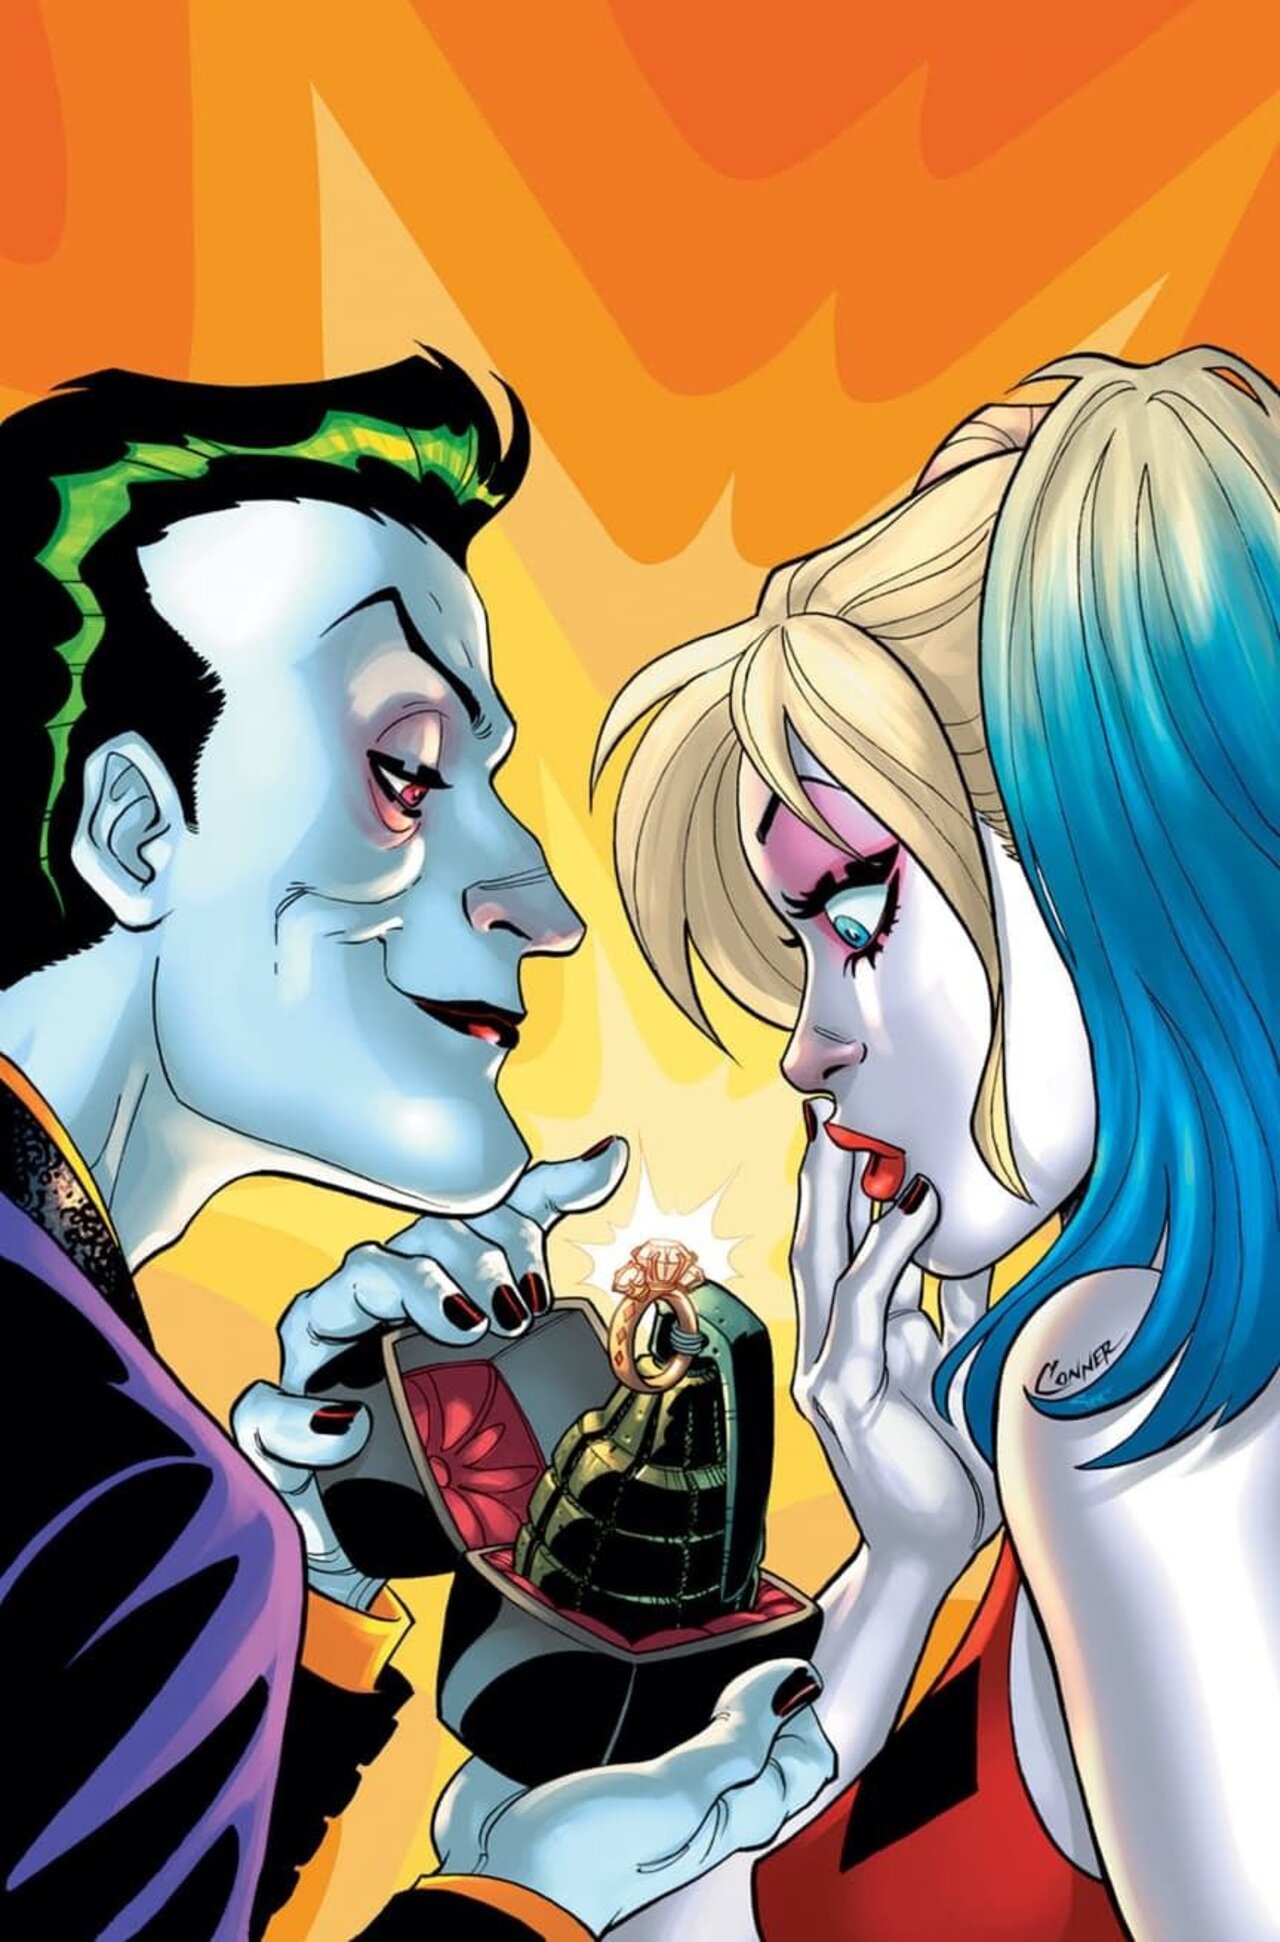 ArtStation Joker And Harley Quinn, 48% OFF | burrardlaw.com